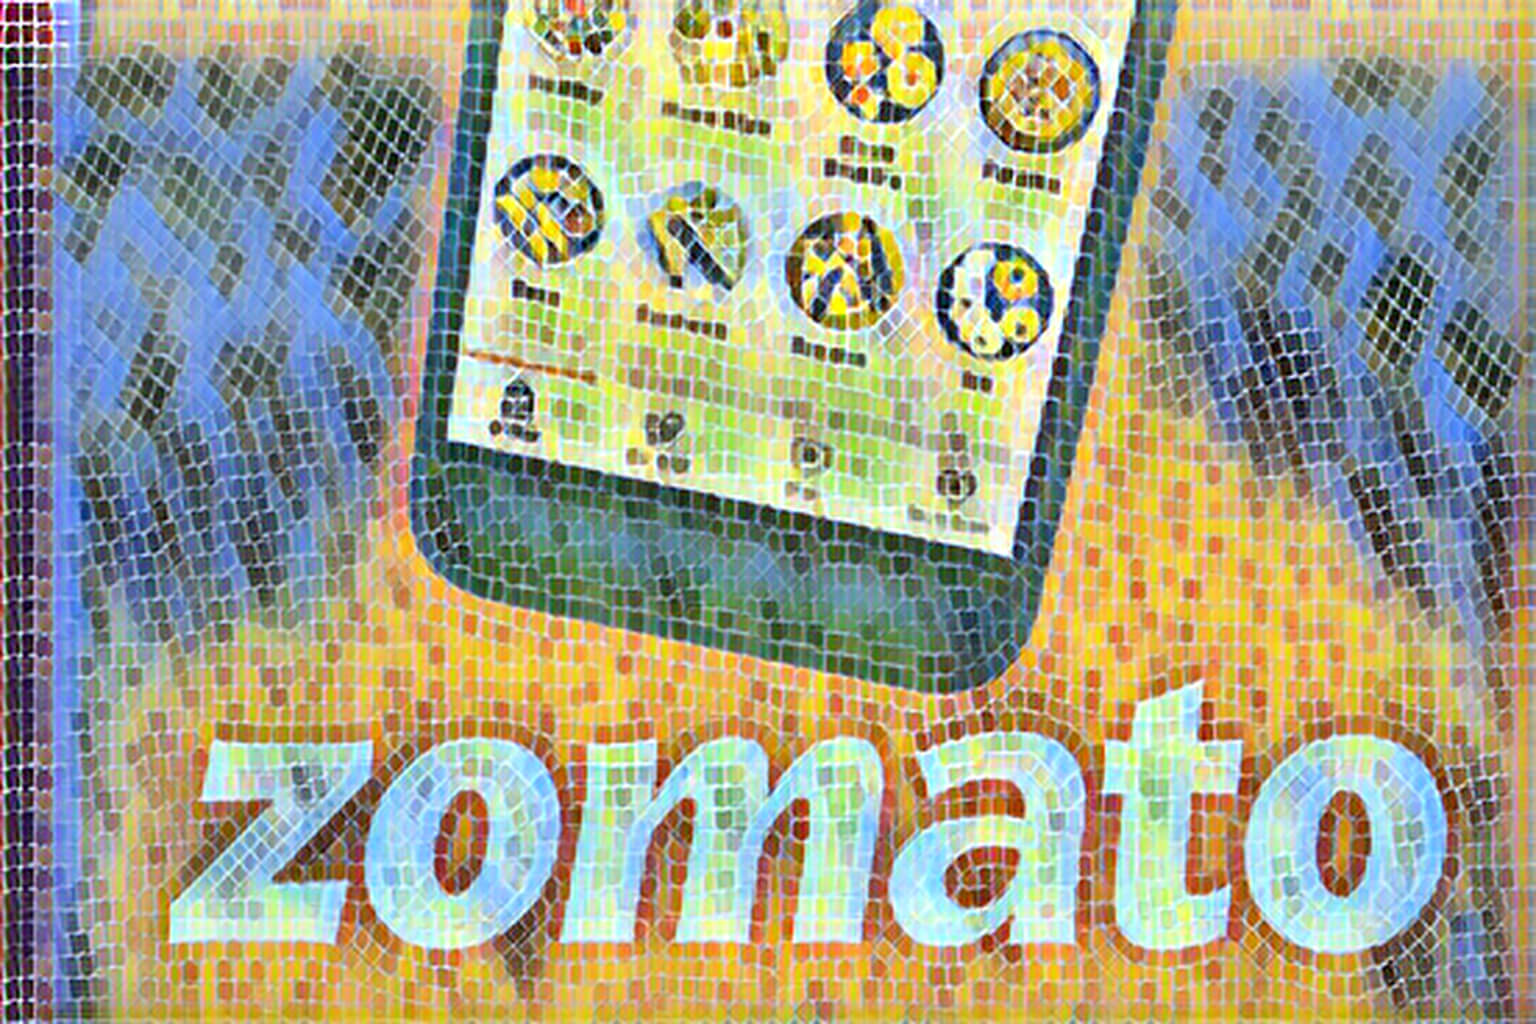      Zomato  1 . 26   IPO